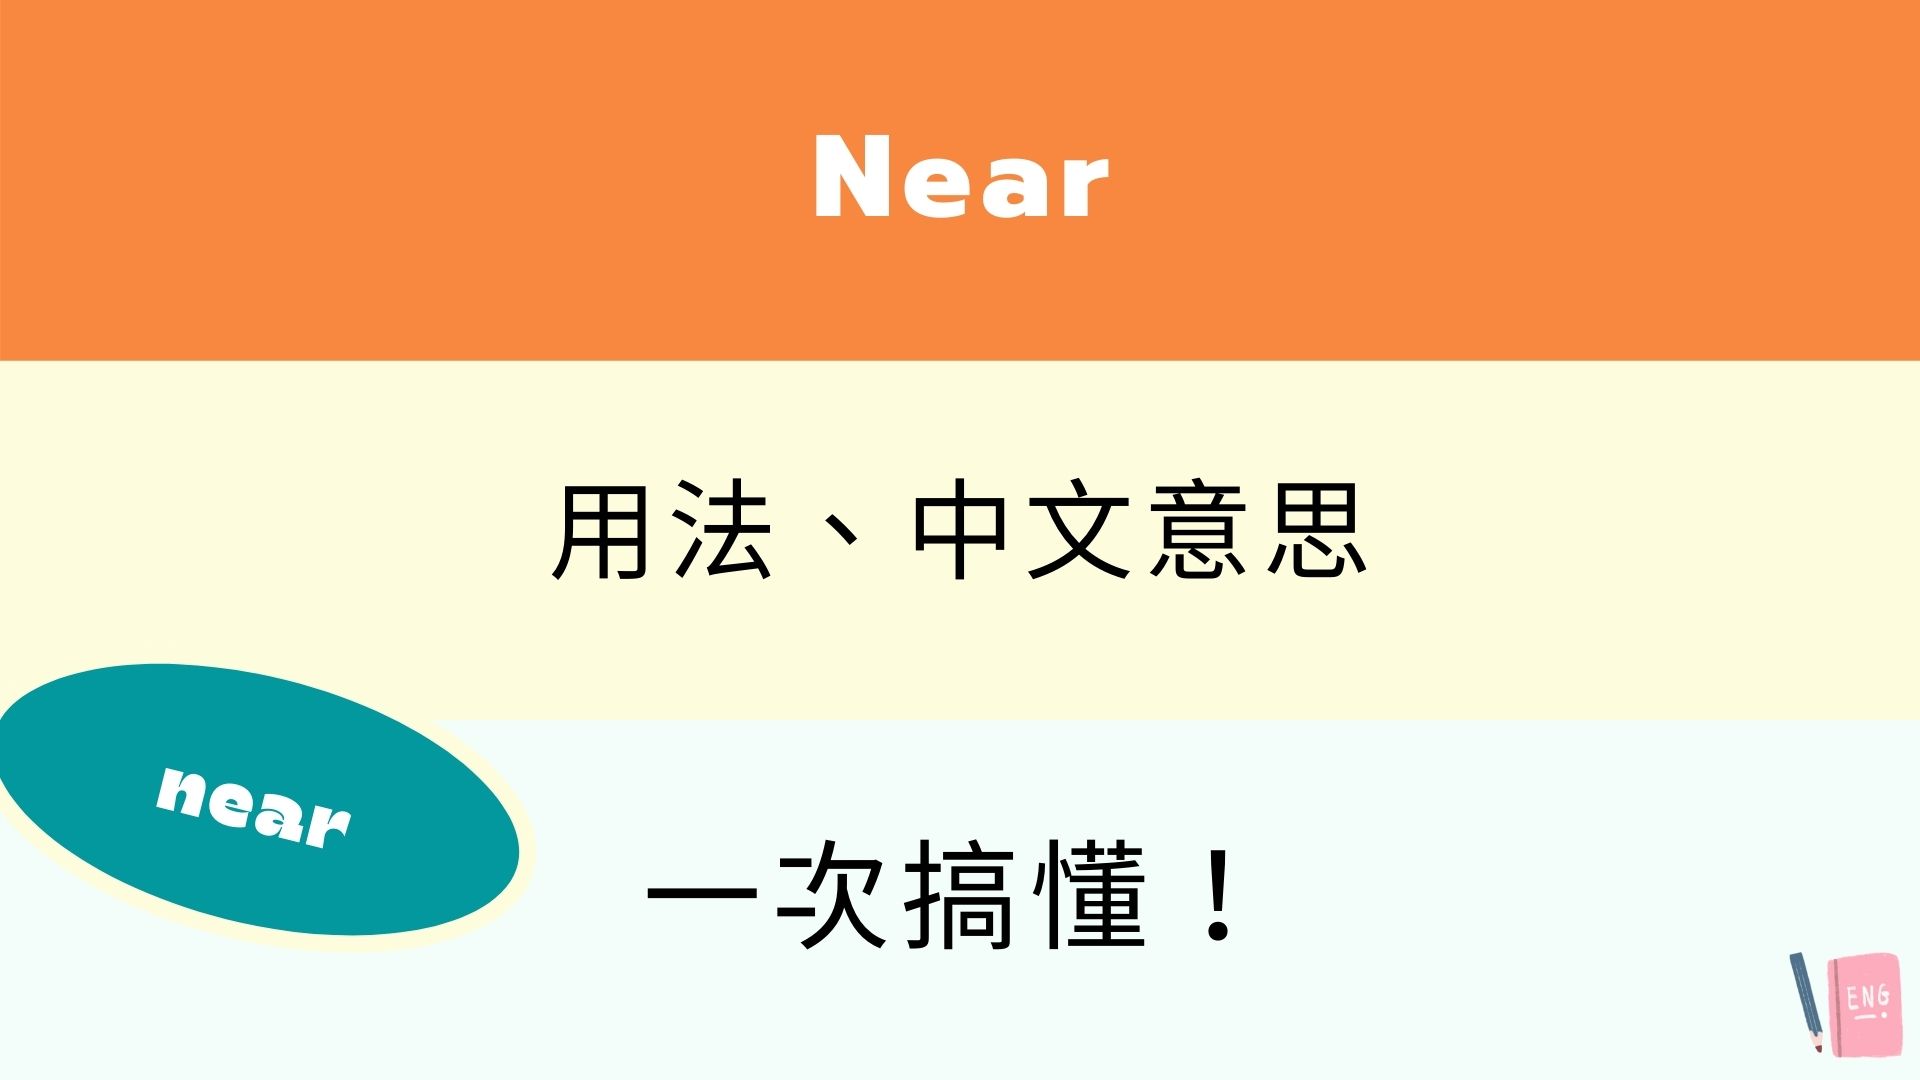 英文 Near 所有用法與中文意思！跟 Nearby 差在哪？看例句搞懂！